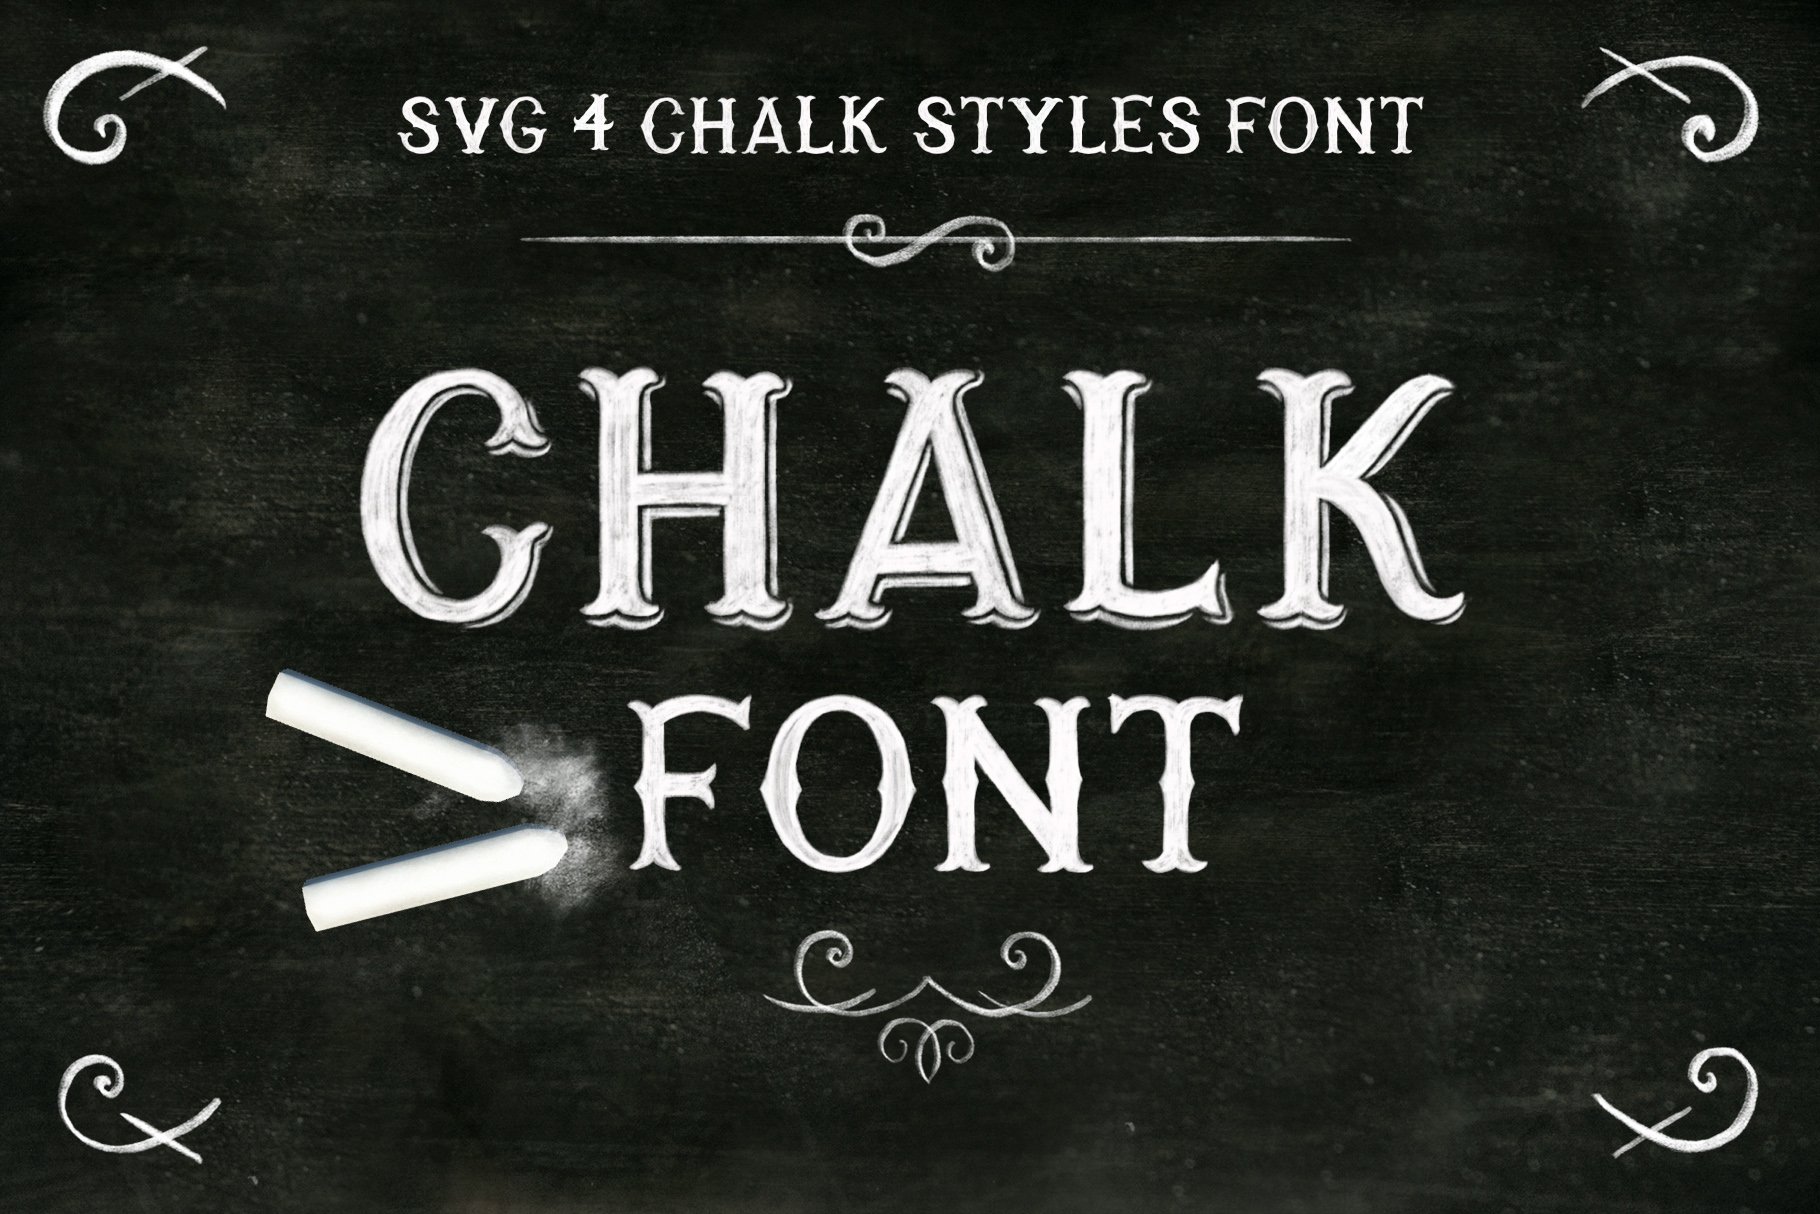 带有高清粉笔纹理的手写英文字体 Chalk SVG font